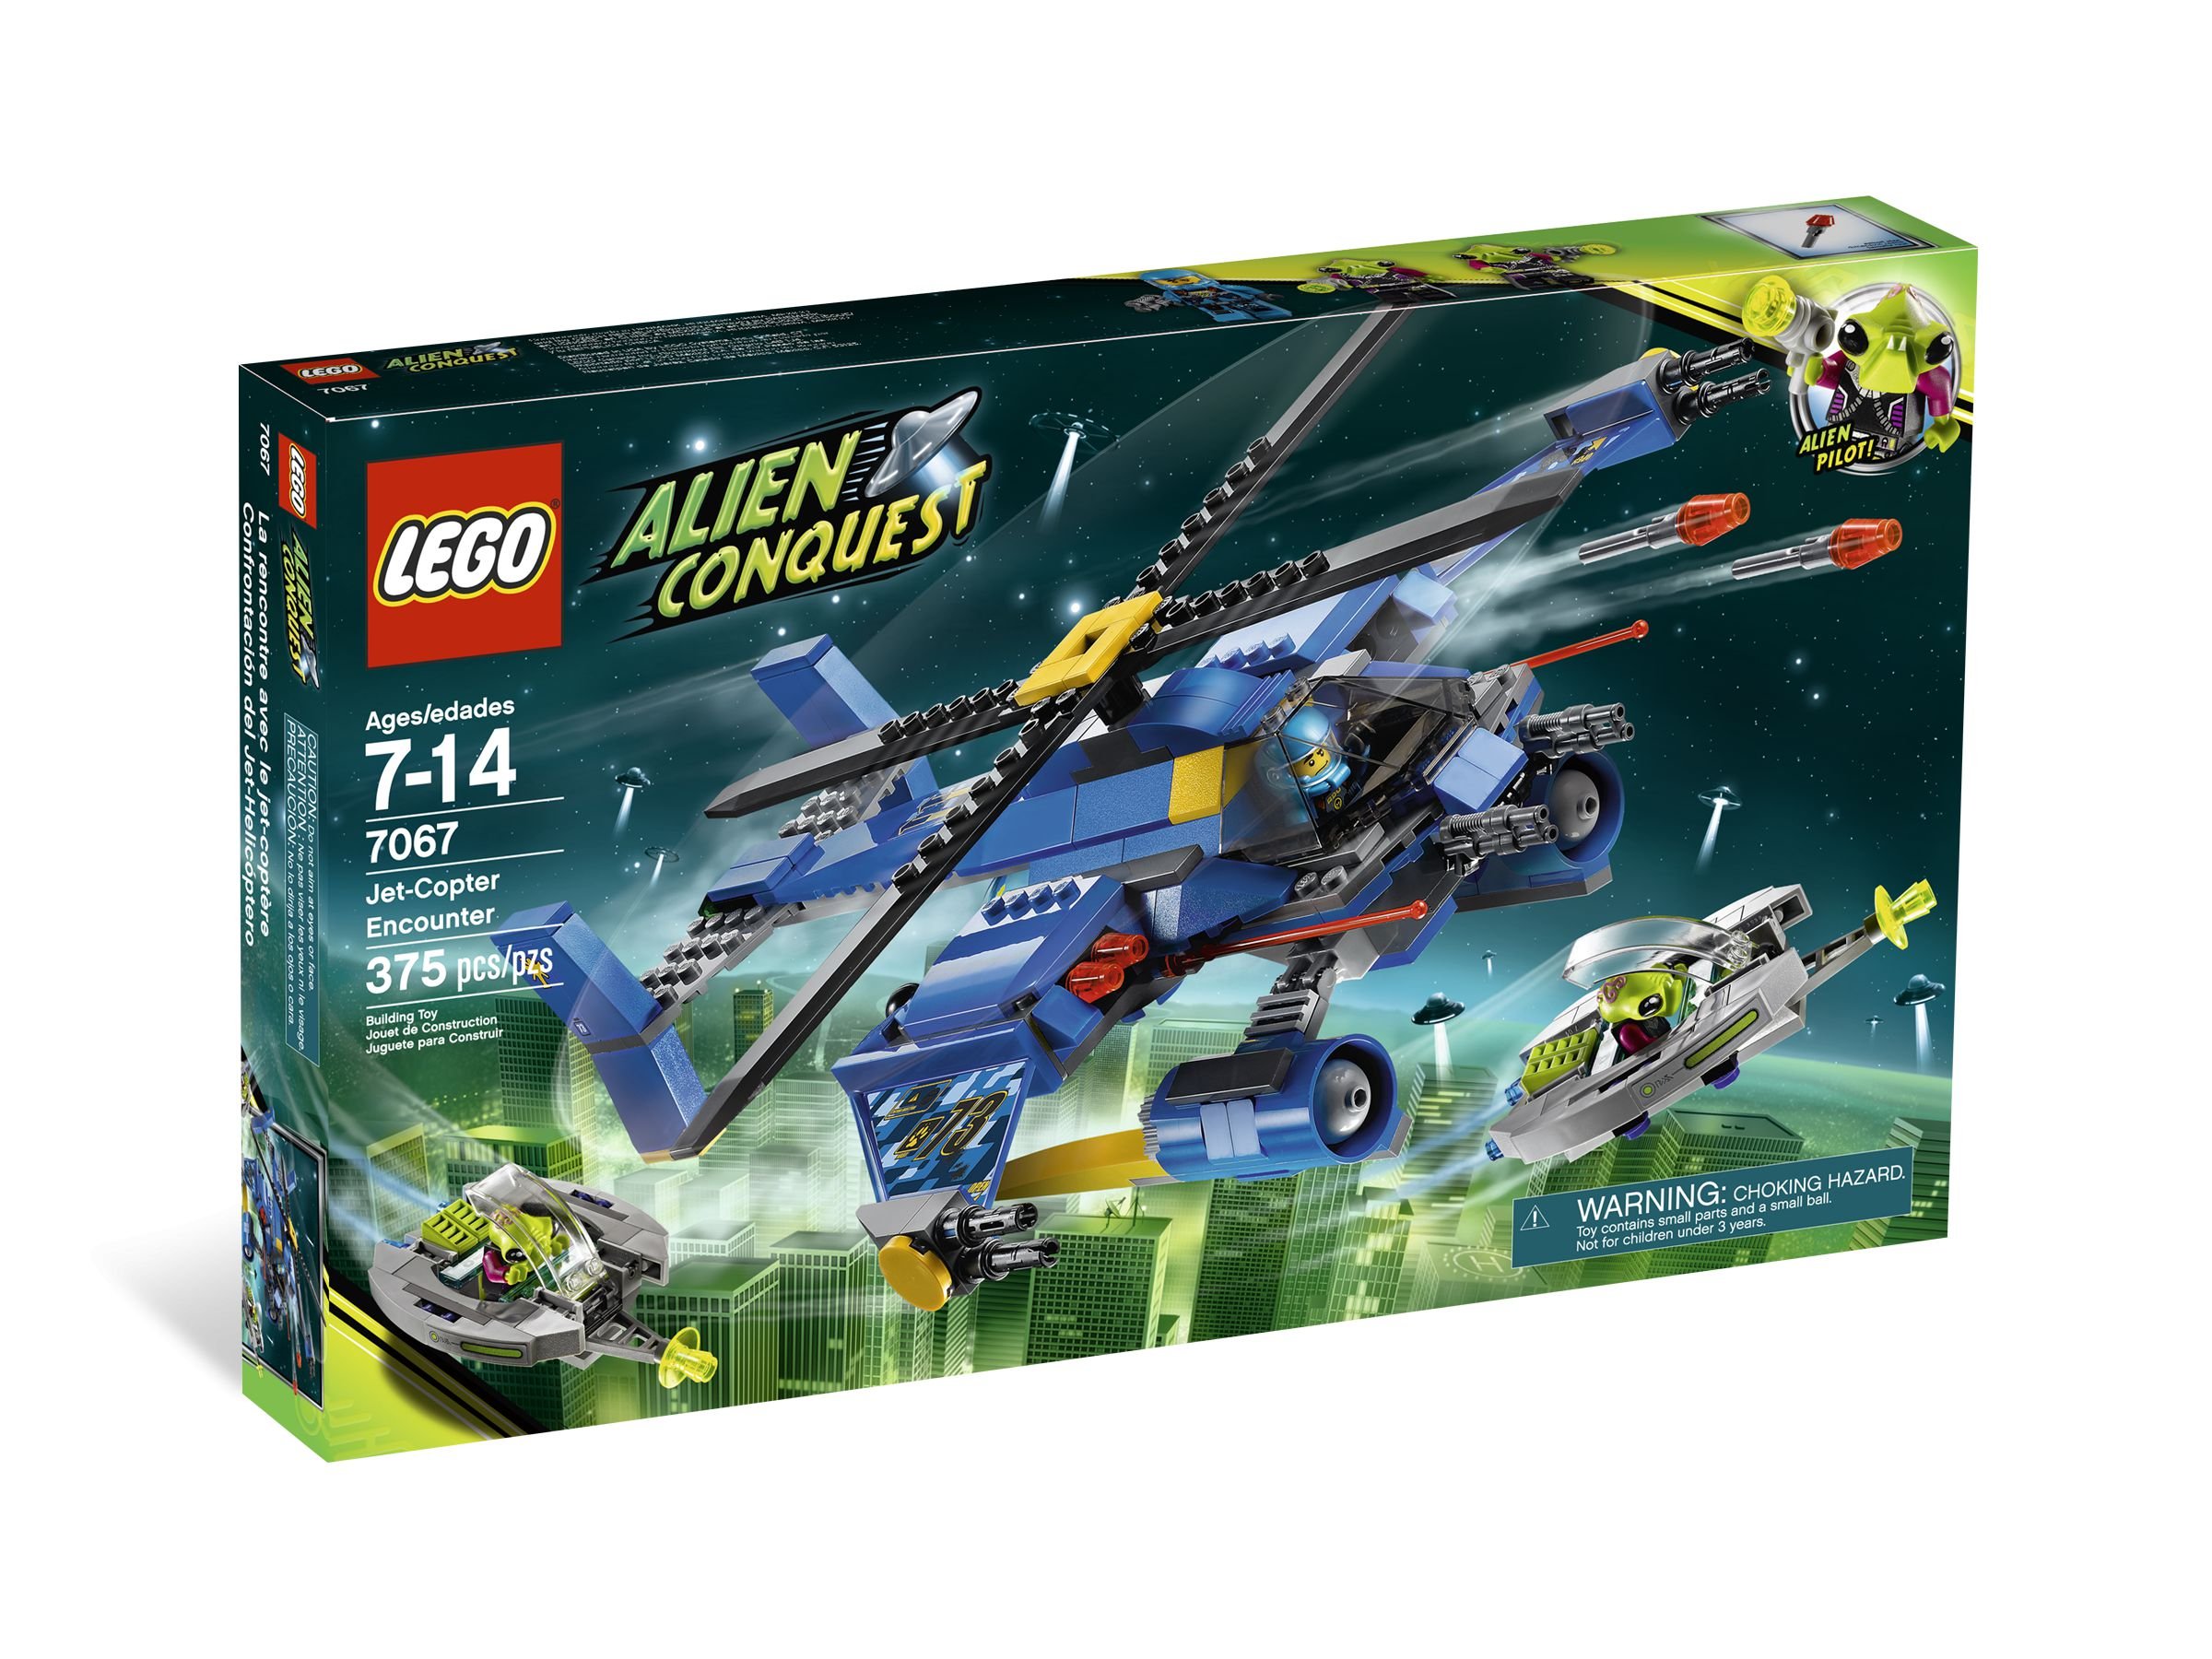 LEGO Space 7067 Alien Conquest : Einsatz im Rotor-Jet LEGO_7067_alt1.jpg